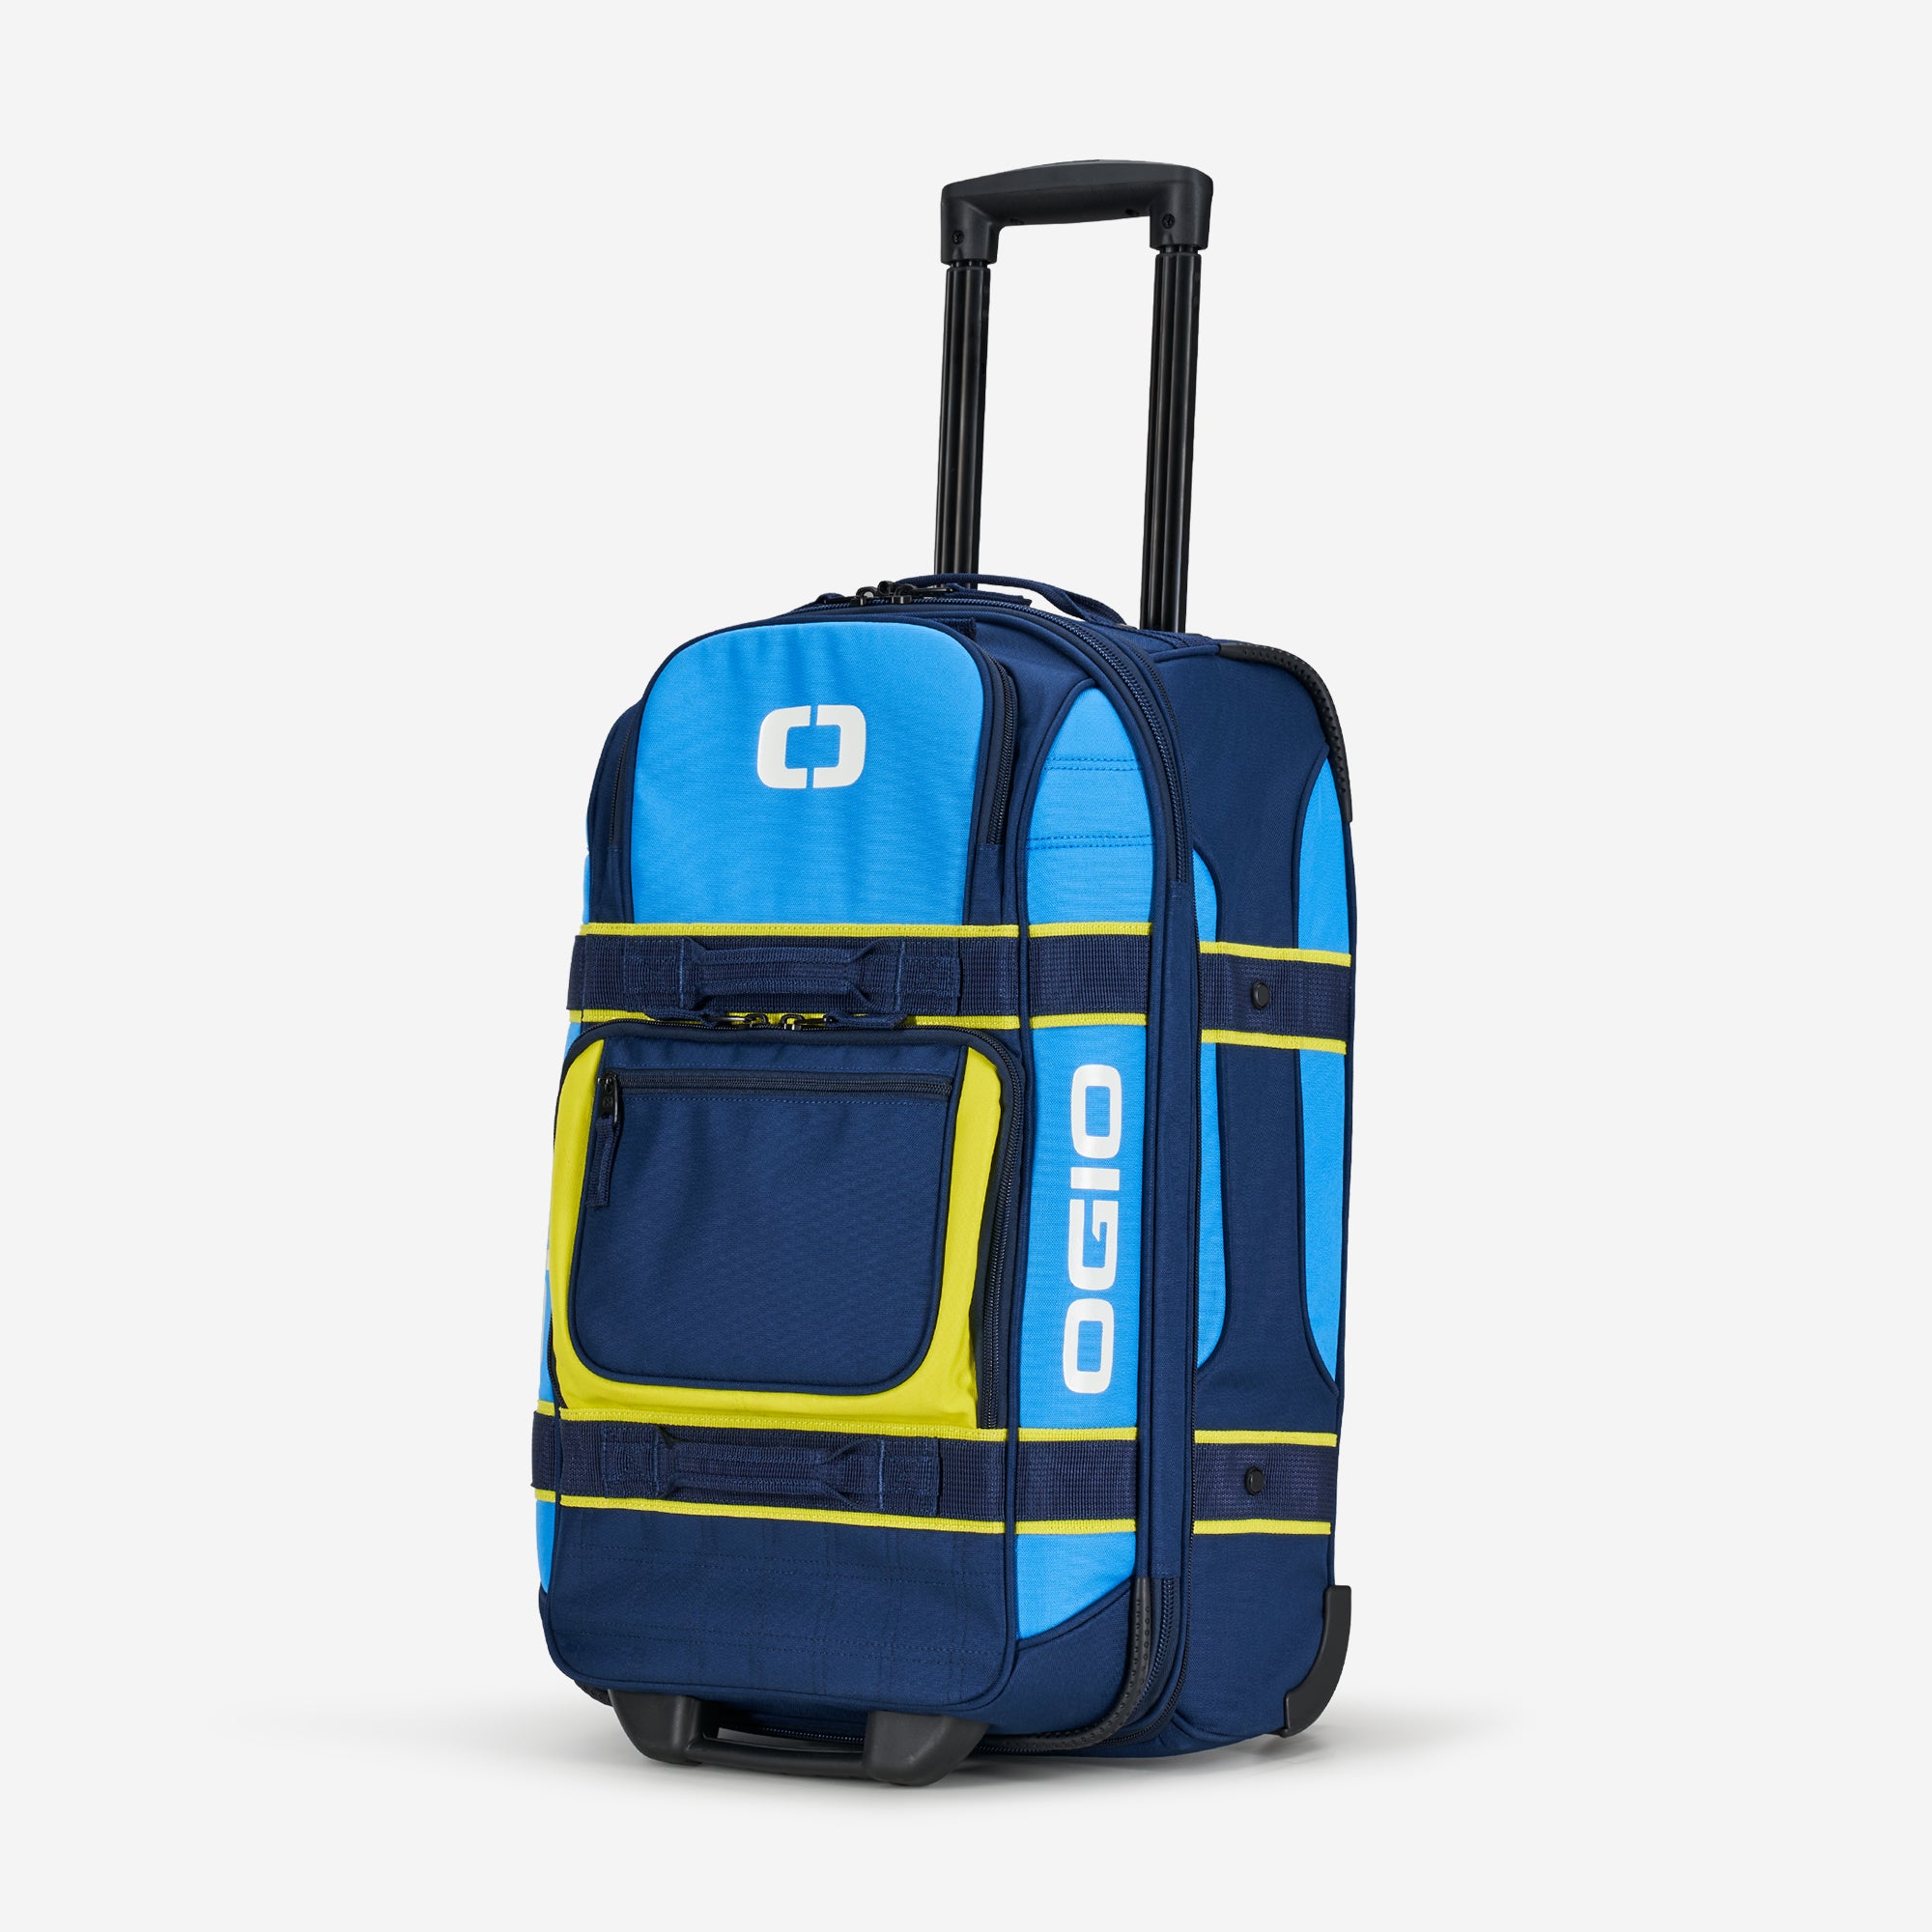 Safari Trolley Bag | Mosaic Cabin Luggage 22 Inch हिन्दी में REVIEW | FI...  | Trolley bags, Cabin luggage, Luggage